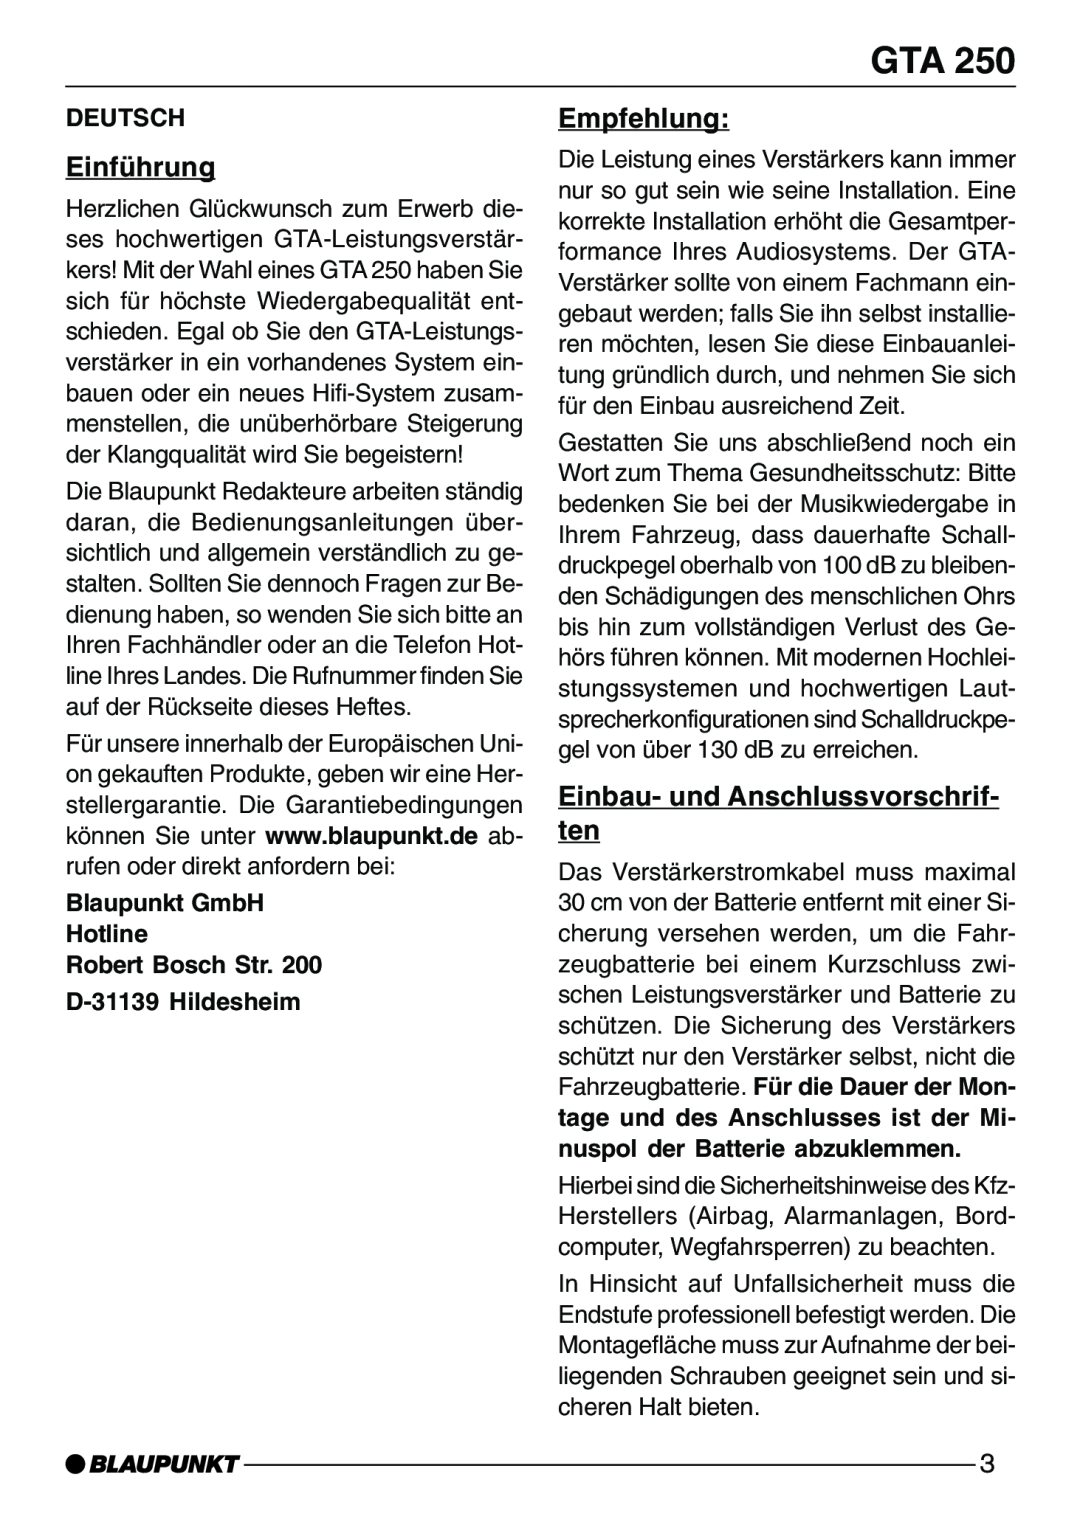 Blaupunkt GTA 250 EinfŸhrung, Empfehlung, Einbau- und Anschlussvorschrif- ten, Deutsch, D-31139Hildesheim 